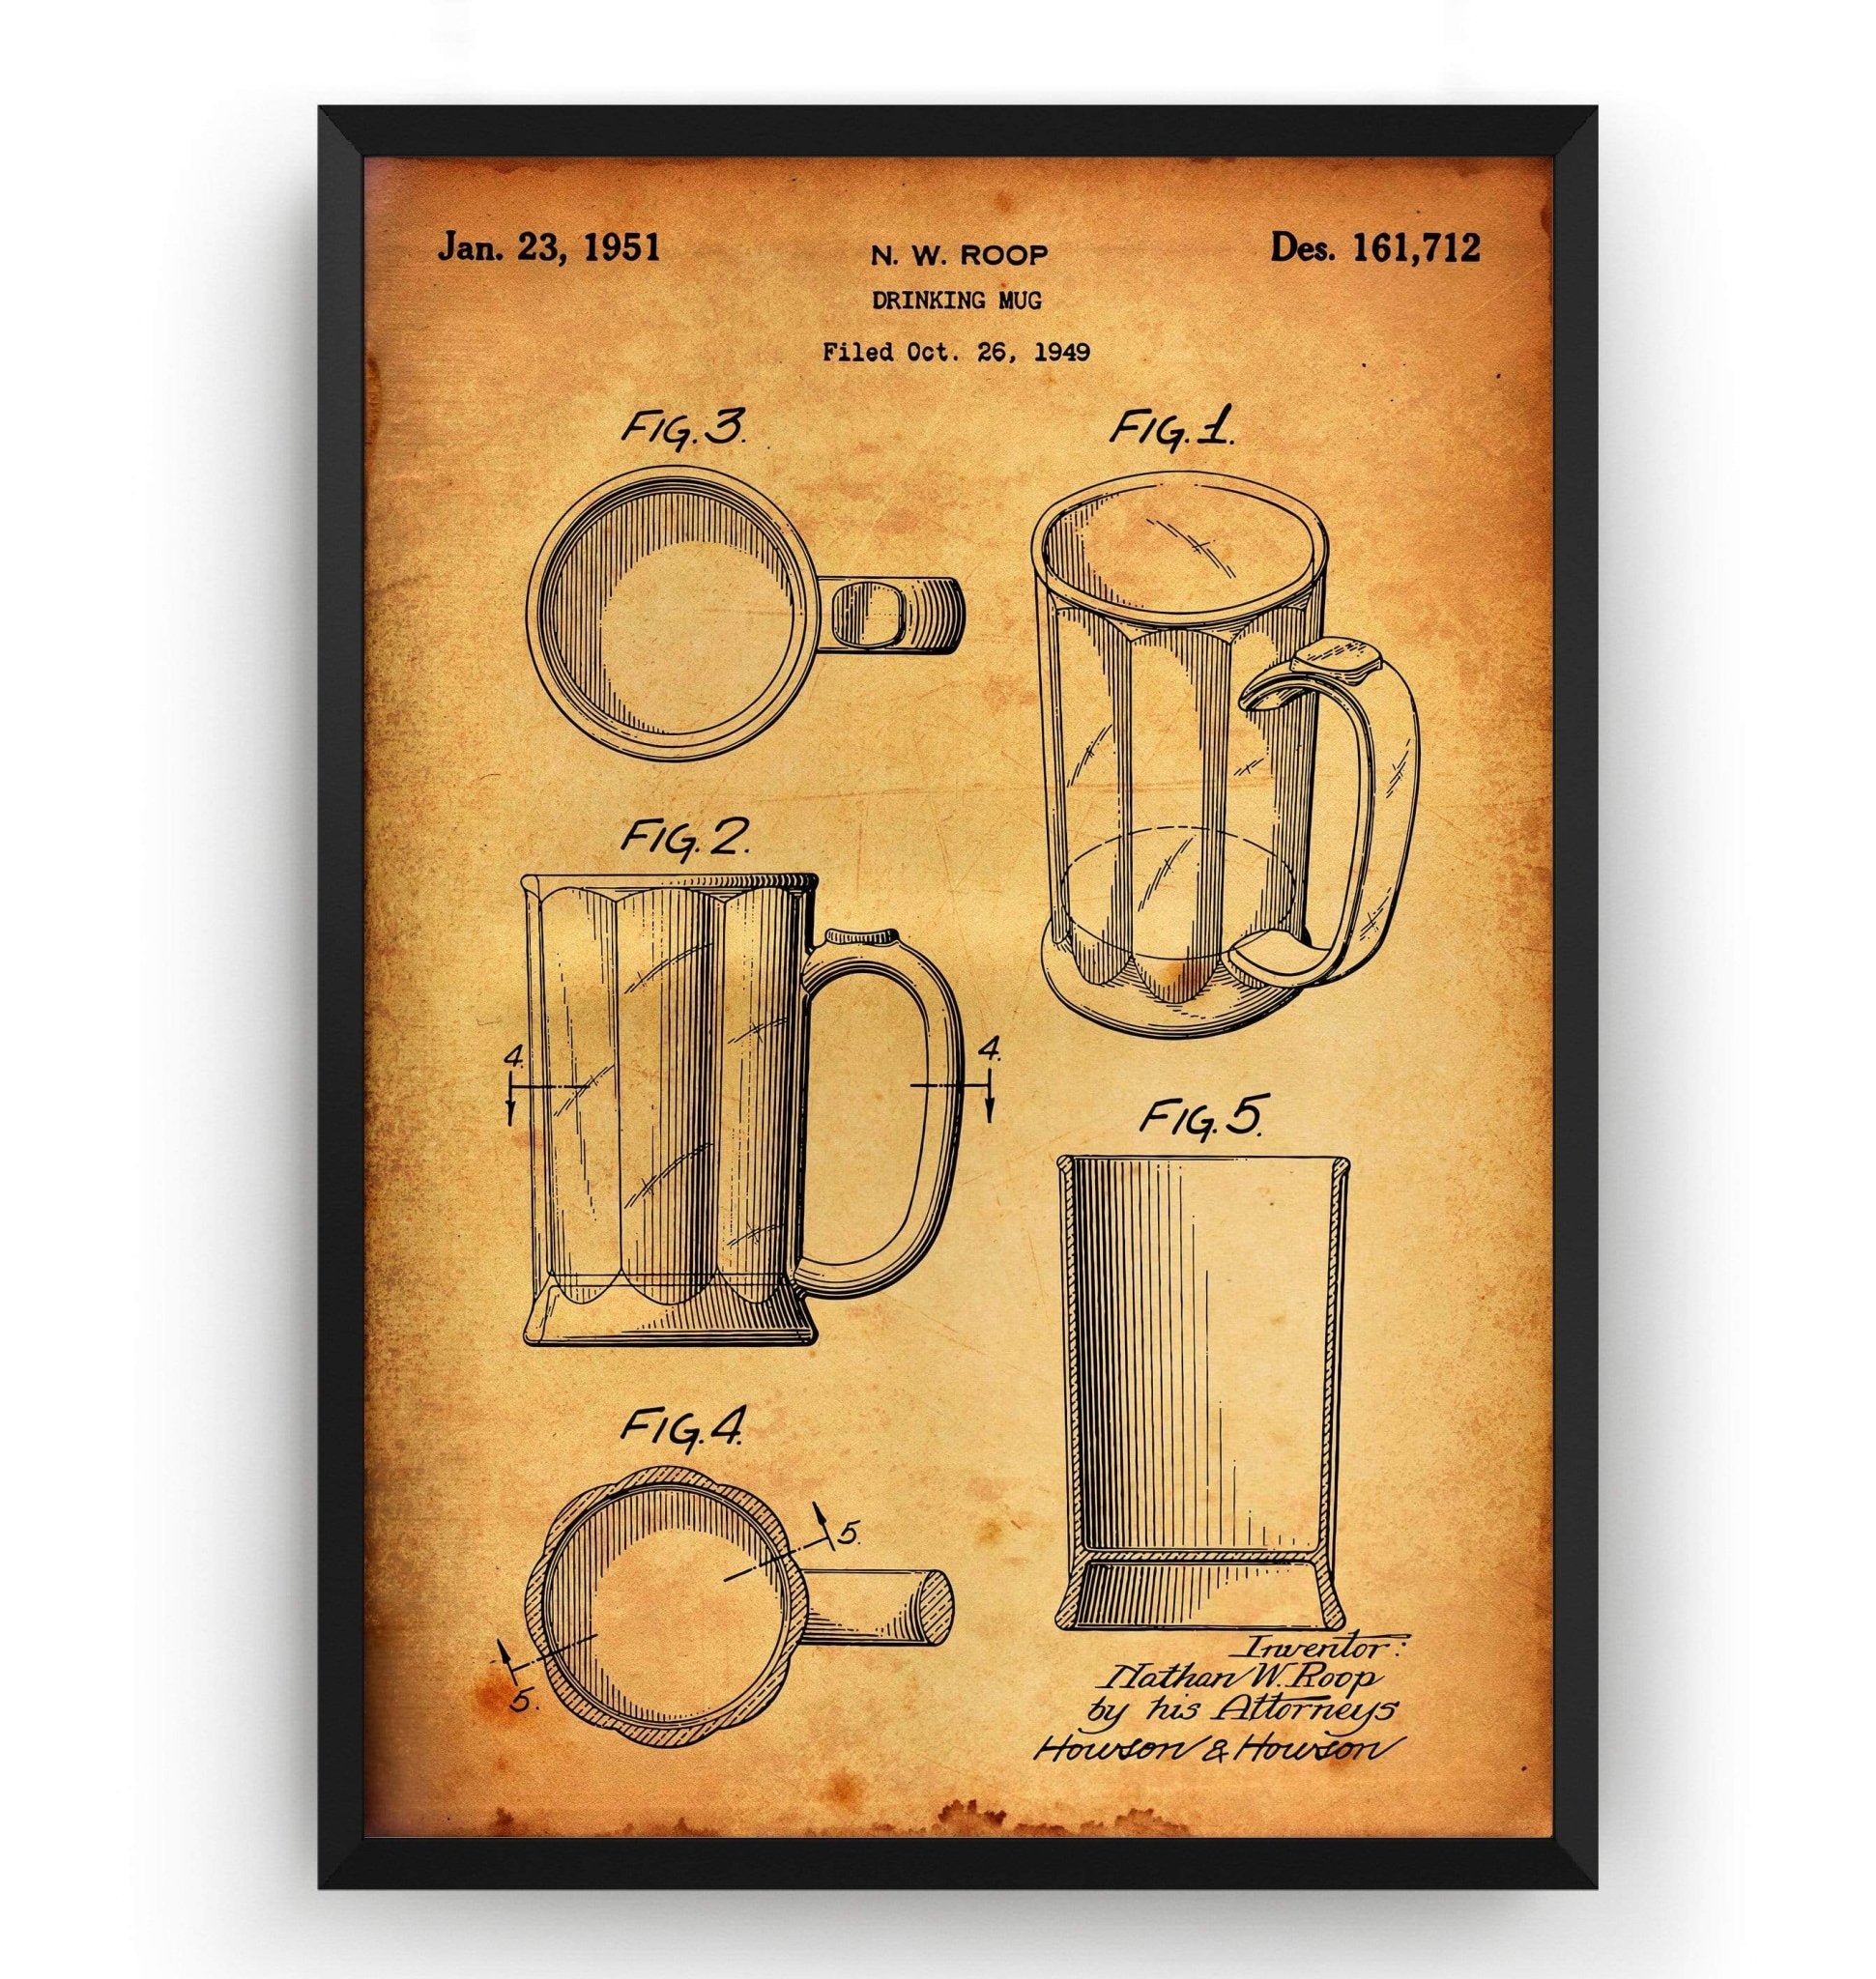 Beer Mug 1951 Patent Print - Magic Posters